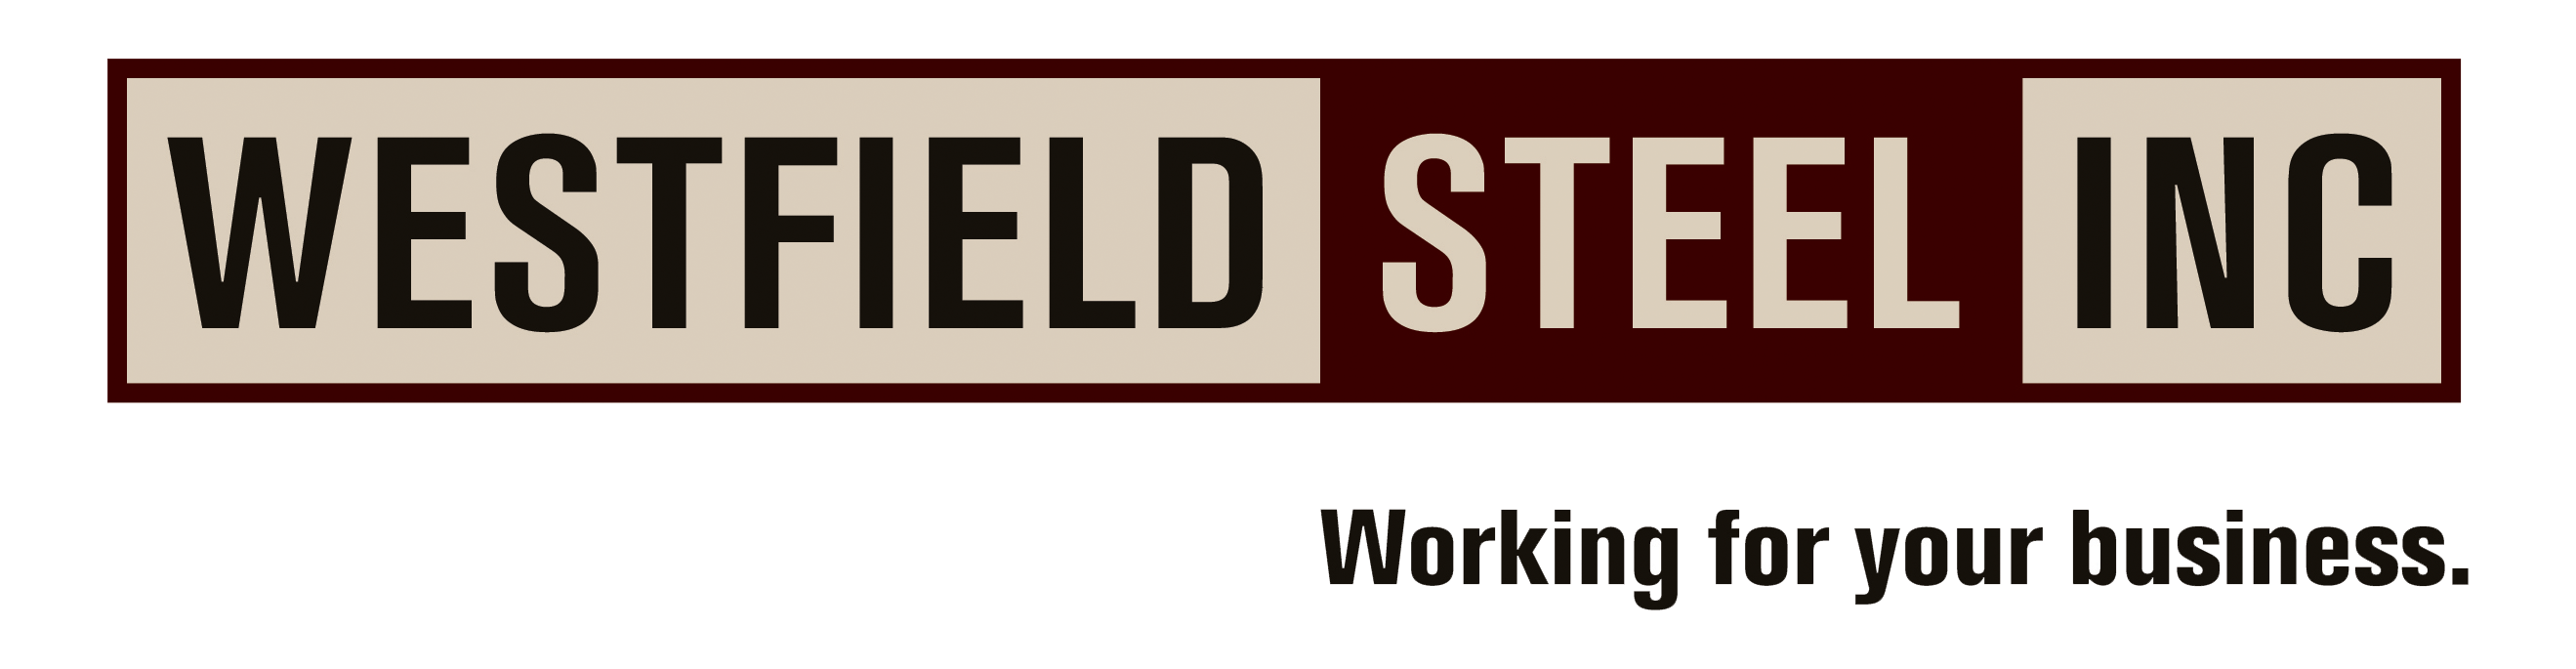 Westfield Steel Inc.